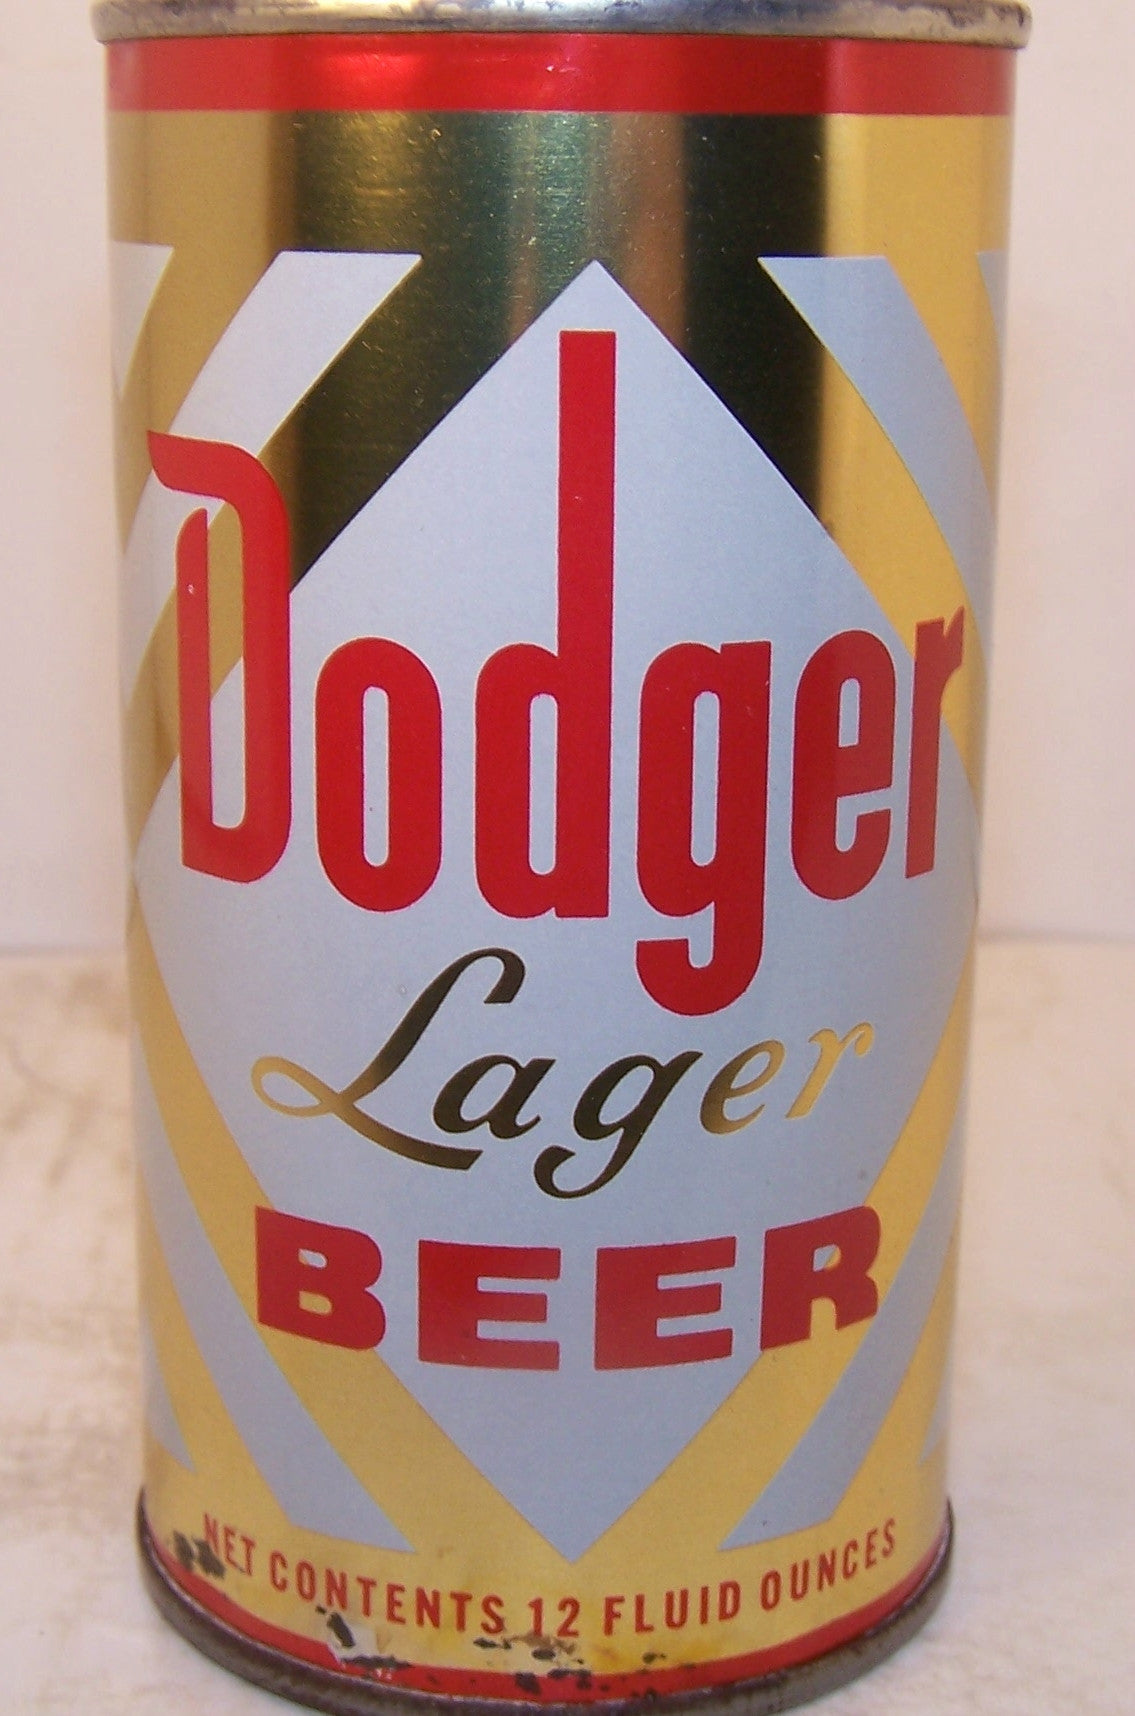 Dodger Lager Beer, USBC 54-17, Grade 1 Sold on 2/14/15